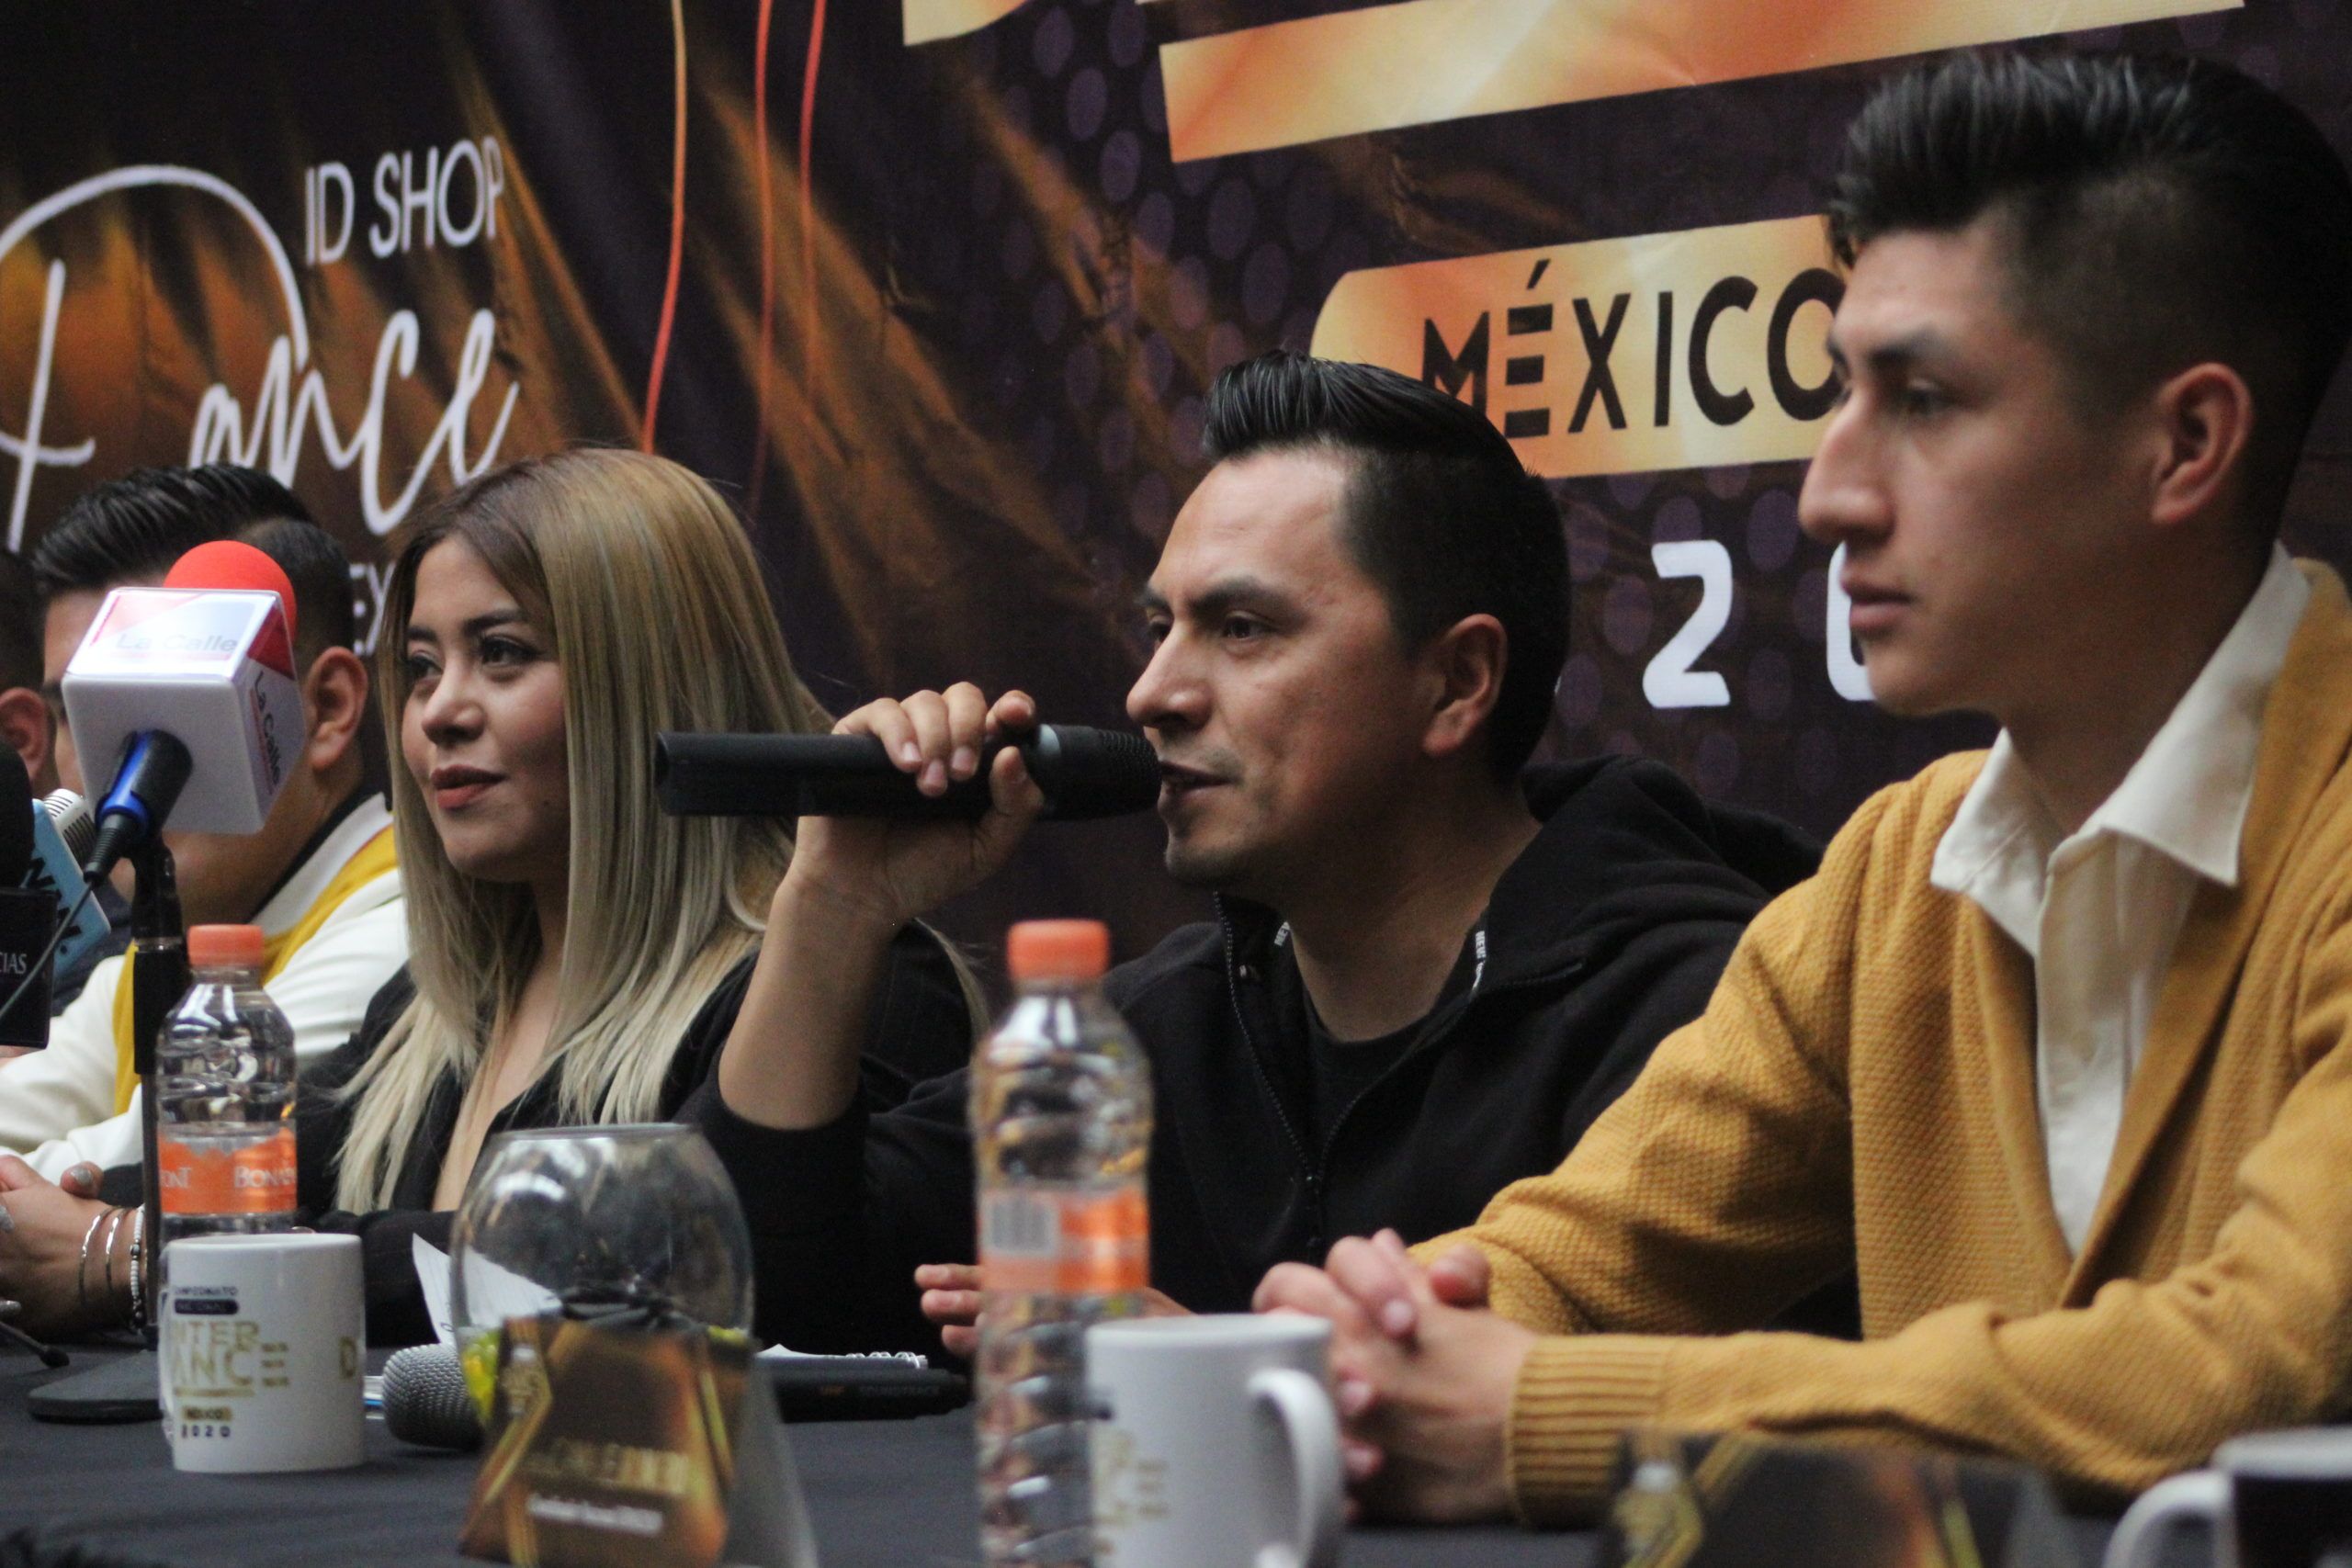 Campeonato Interdance México 2020 llega a Toluca en su Octava edición Nacional.